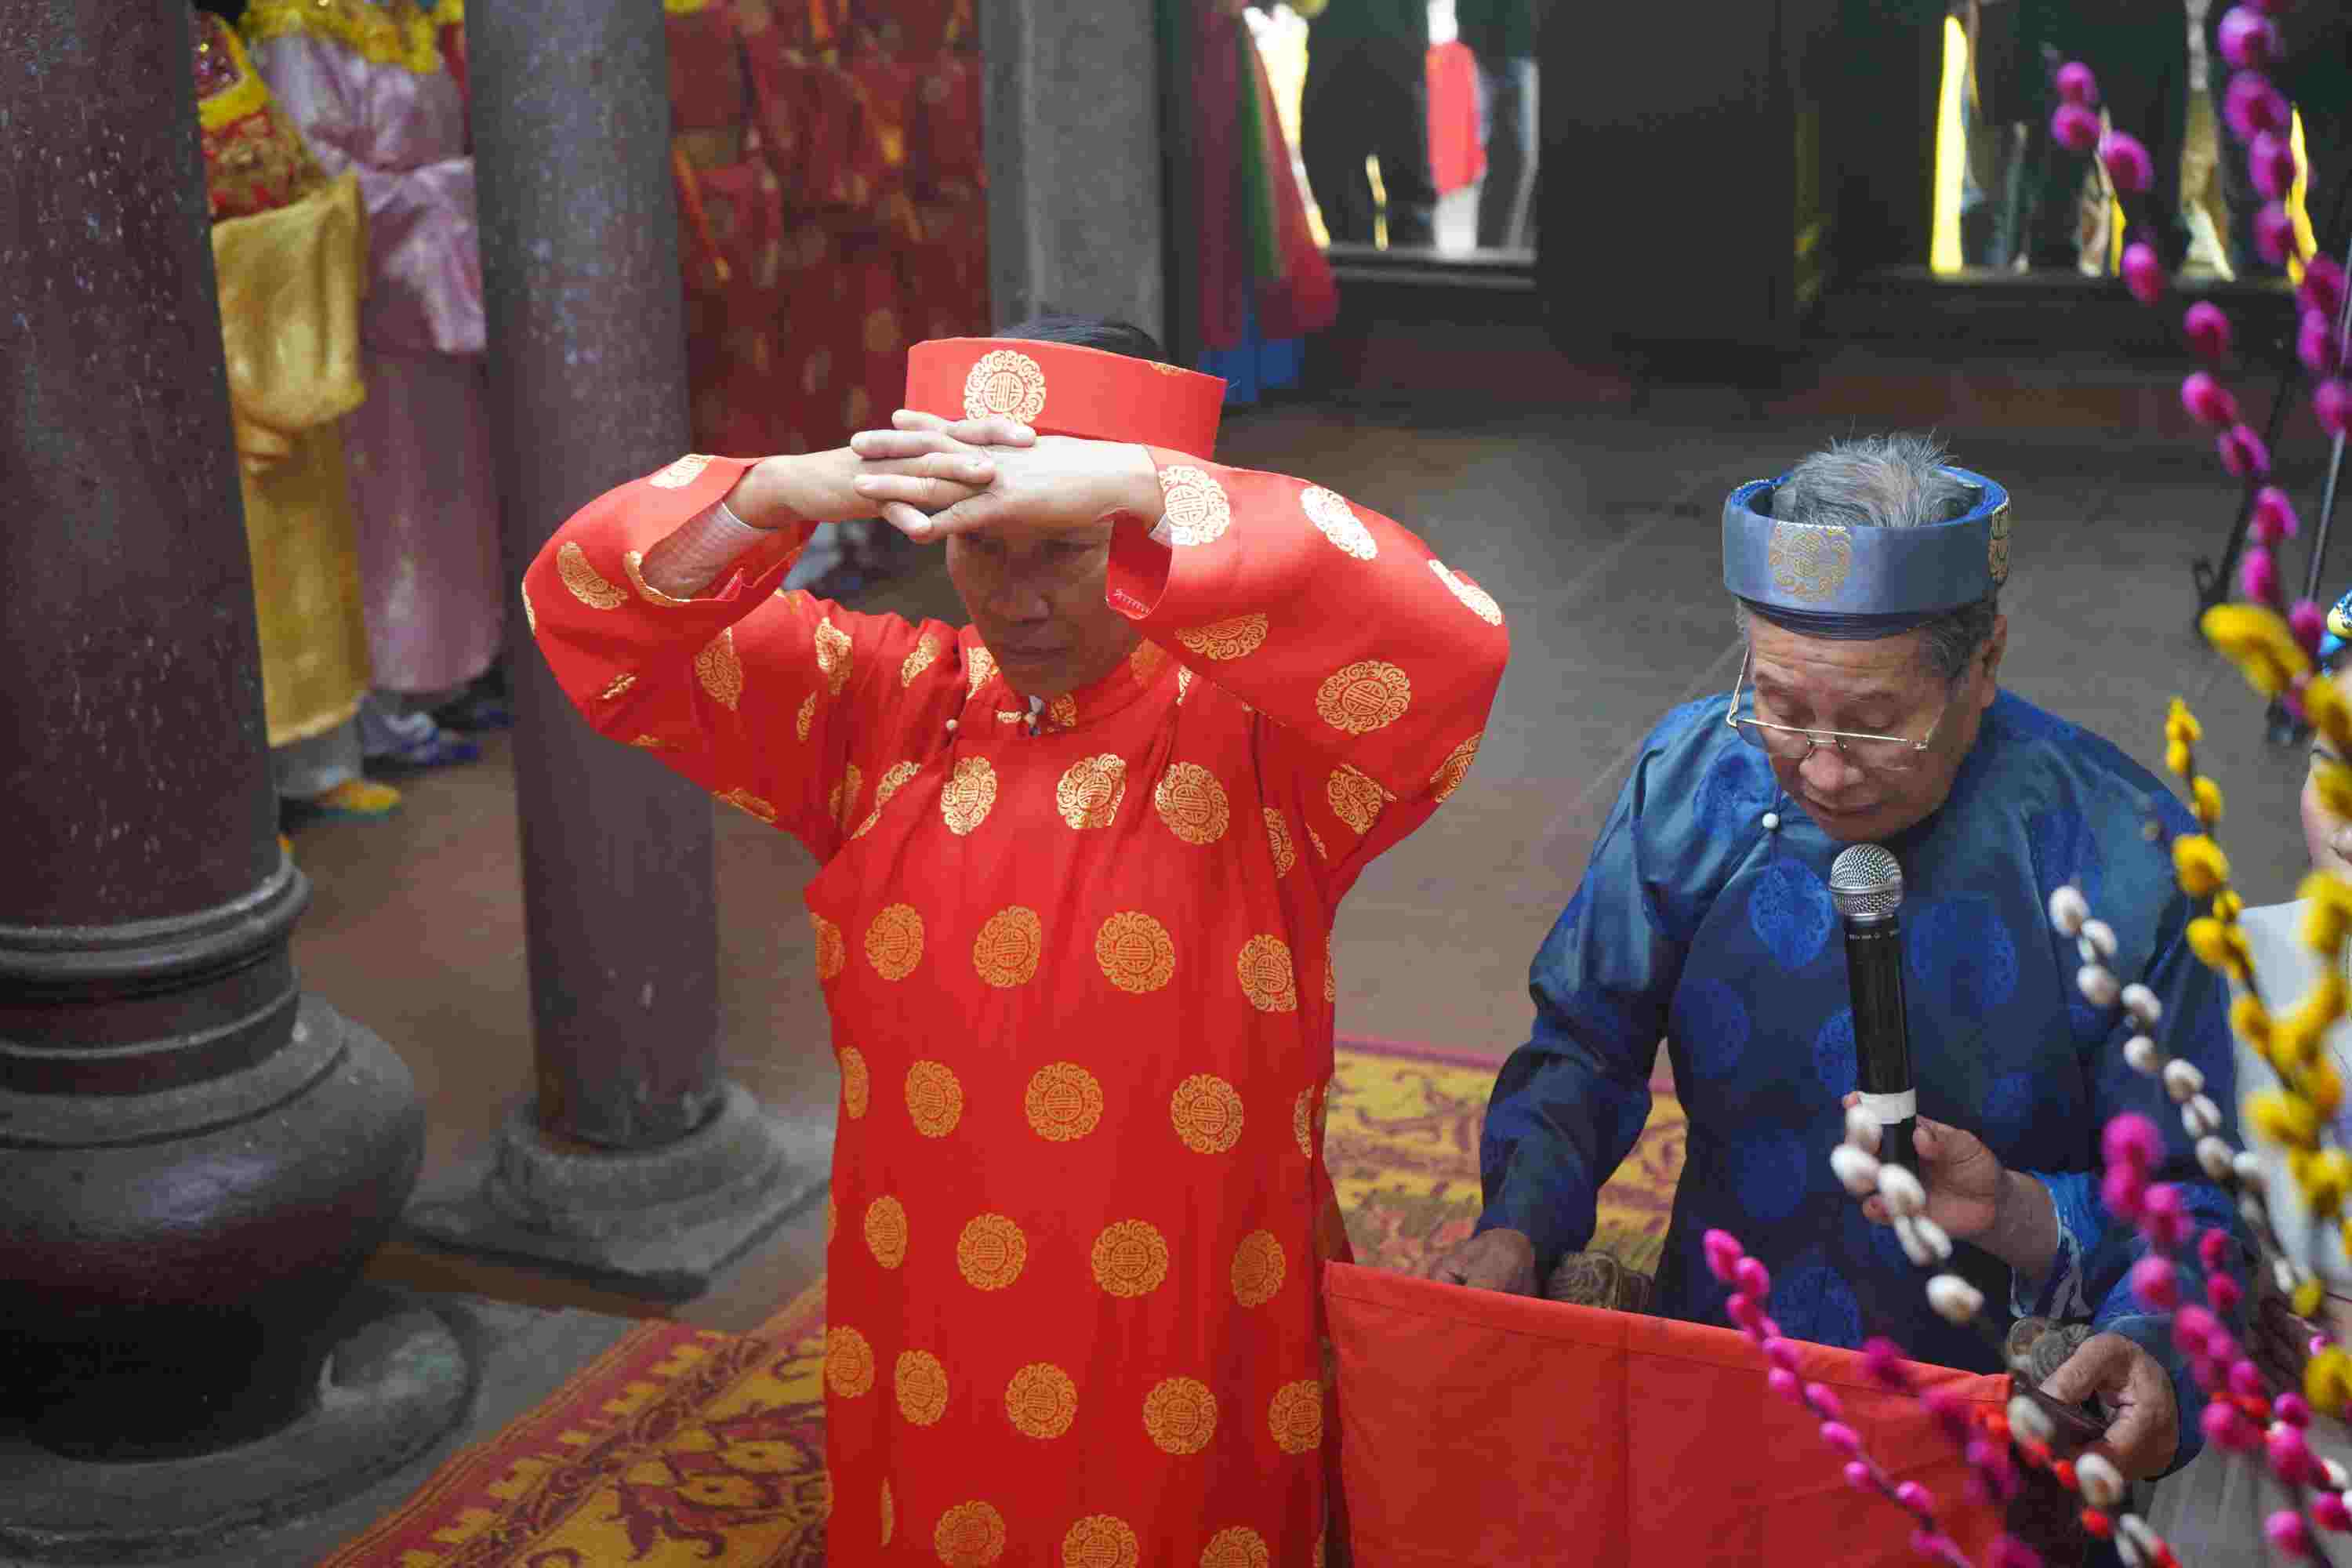 Sau đó, chủ tế cùng các vị cao niên trong làng dâng hương tại đền Hòa Liễu, kết thúc nghi lễ chính trong lễ hội Minh Thề - lễ hội thề “không tham nhũng” độc nhất, vô nhị ở Việt Nam.